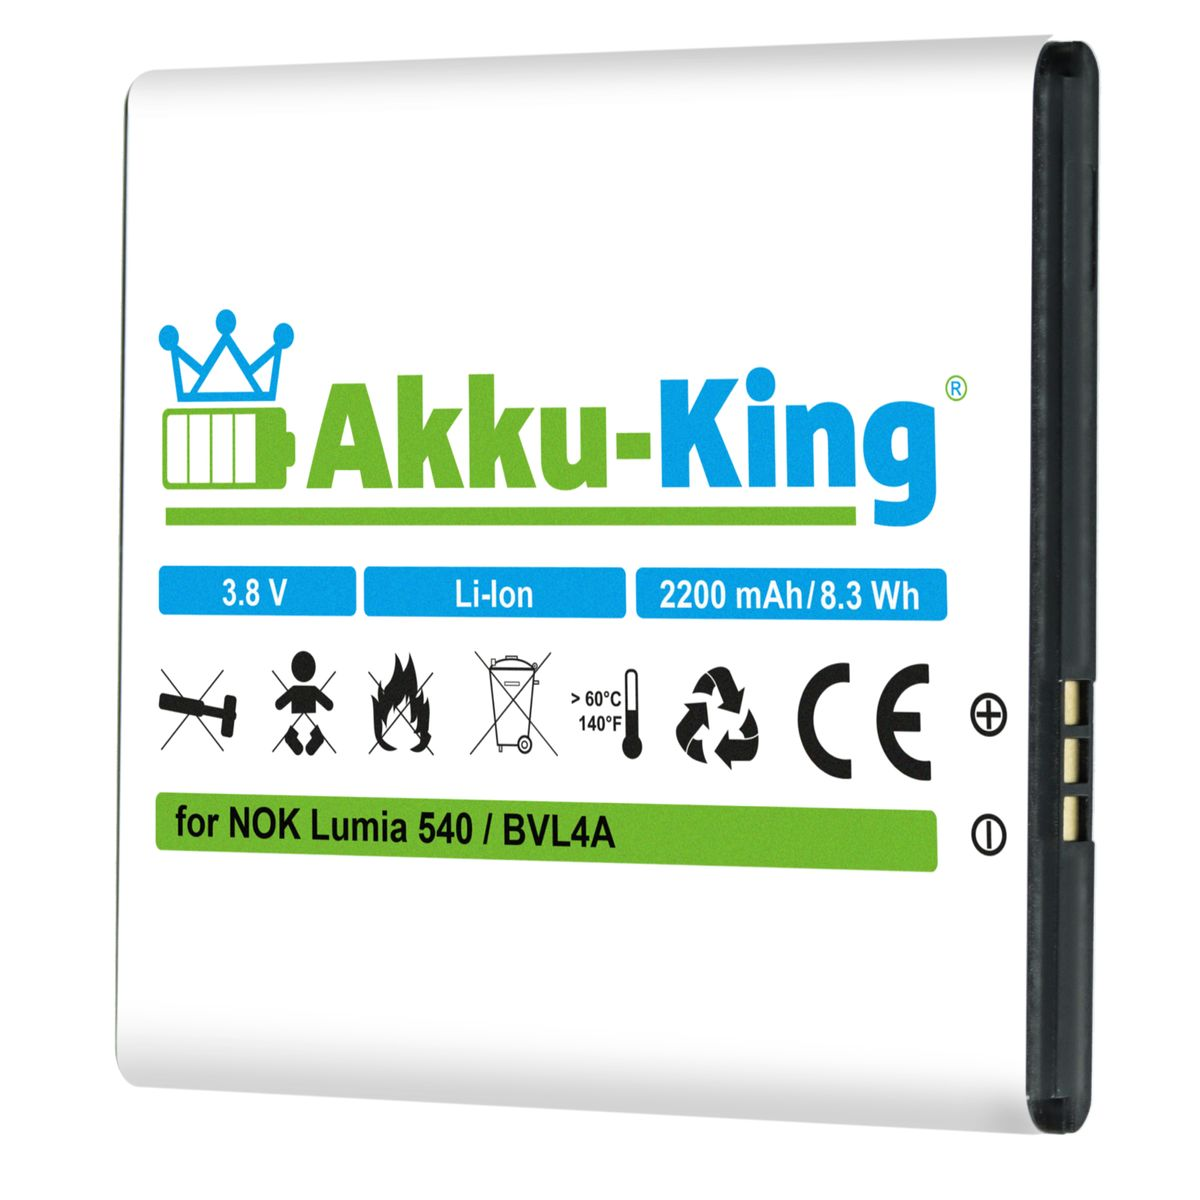 3.8 BV-L4A Akku kompatibel Li-Ion Handy-Akku, 2200mAh AKKU-KING Volt, Nokia mit